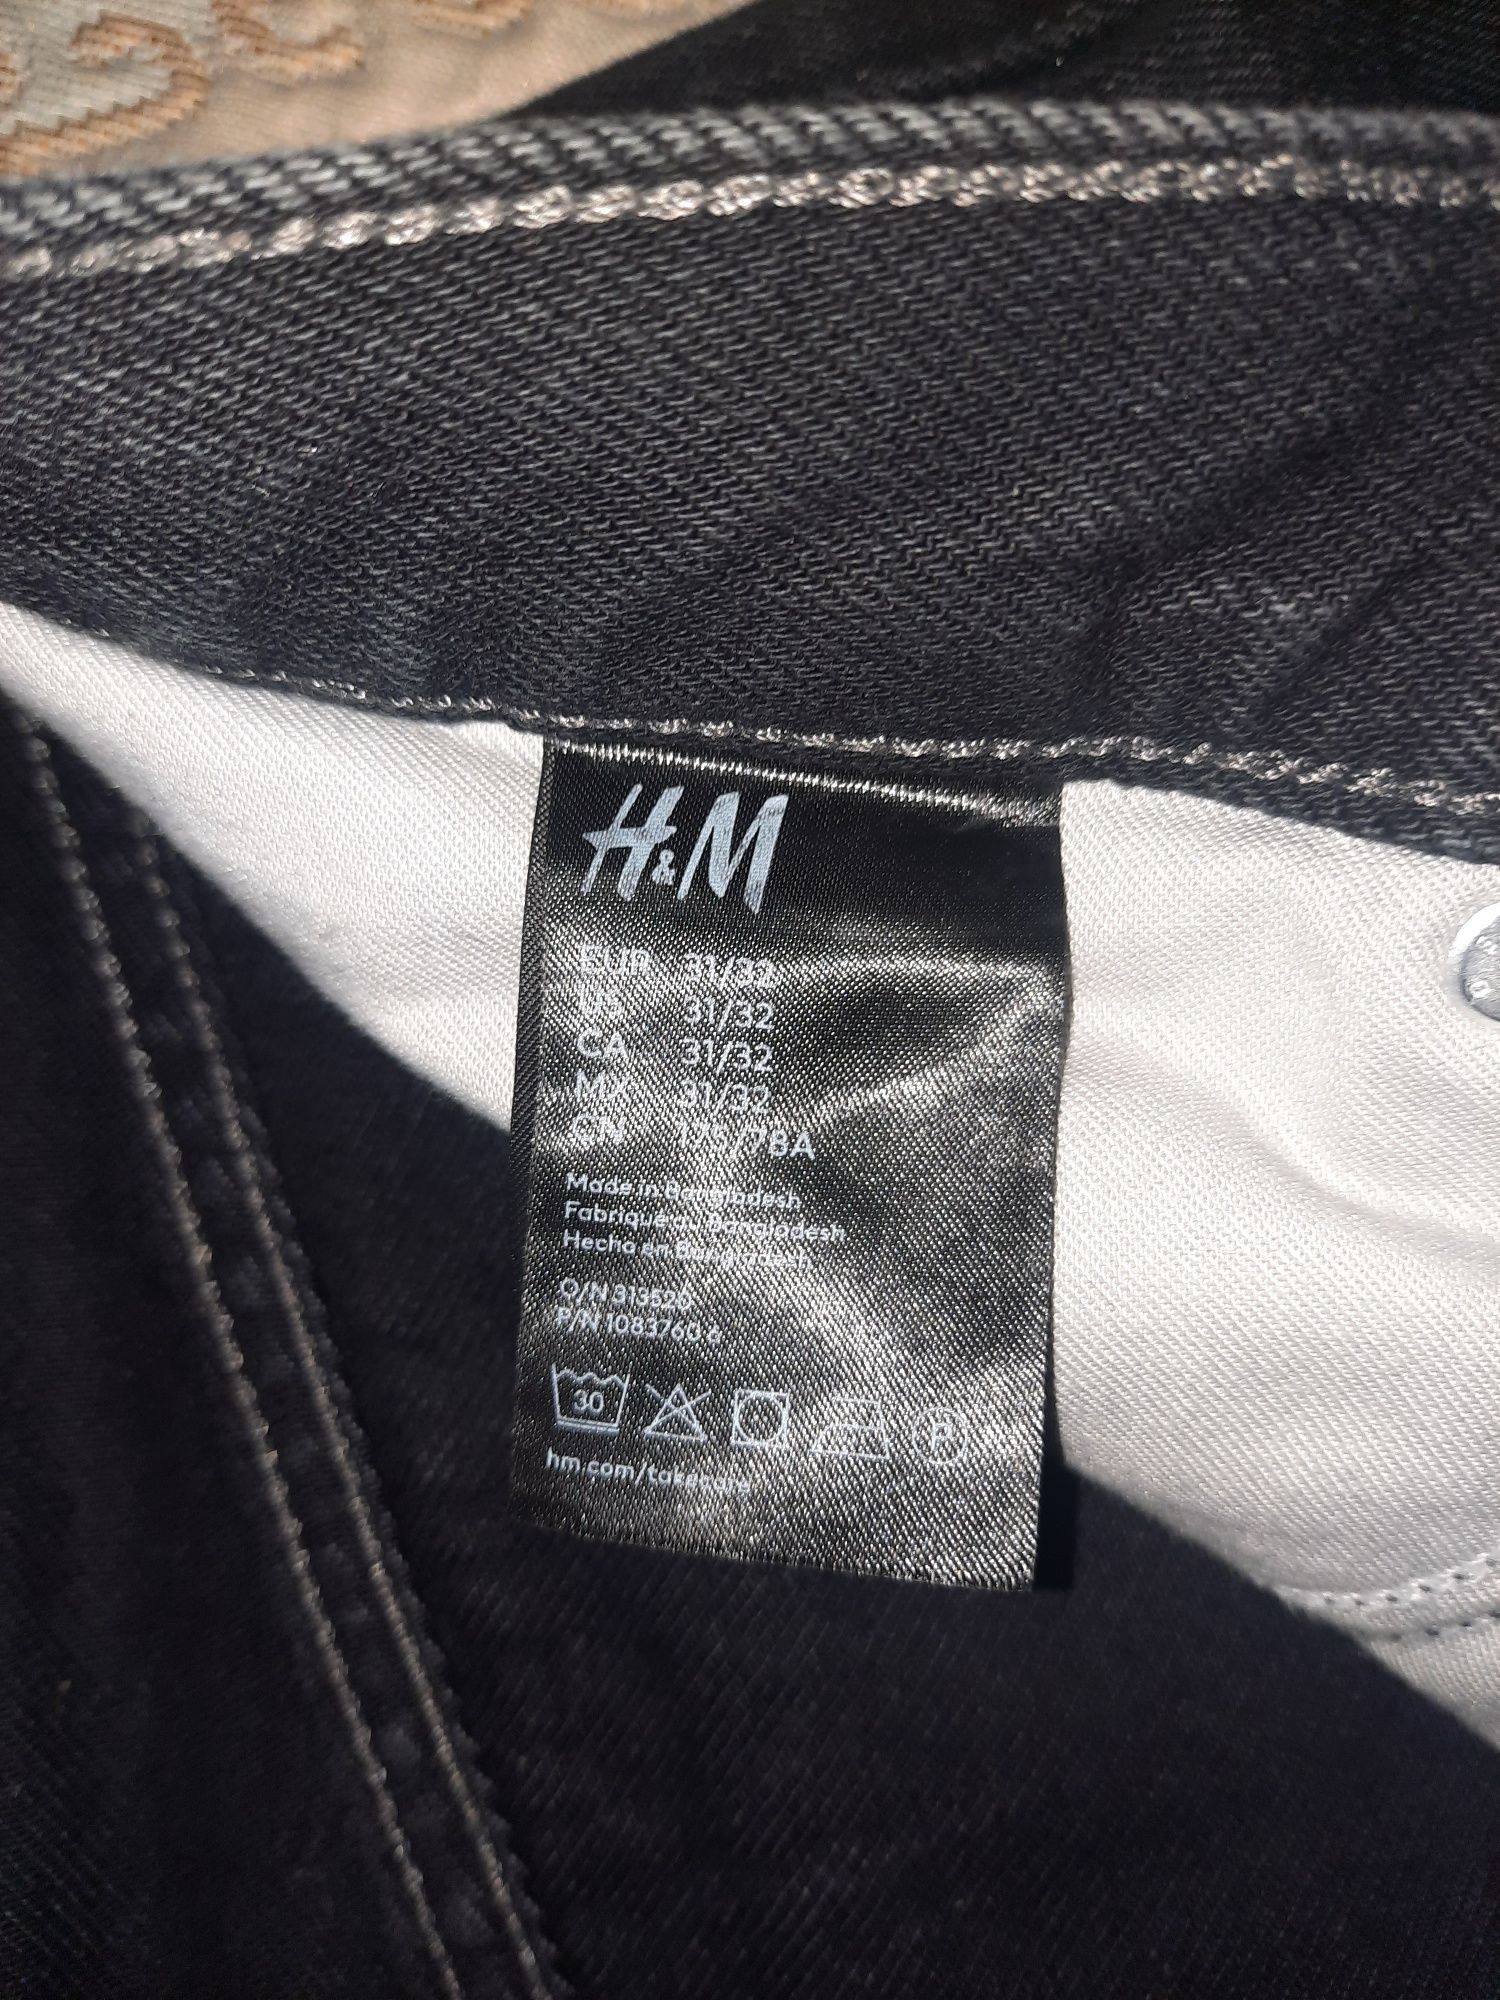 2 по ціні 1! Фірмові нові джинси H&M.Широка модель. р.31/32